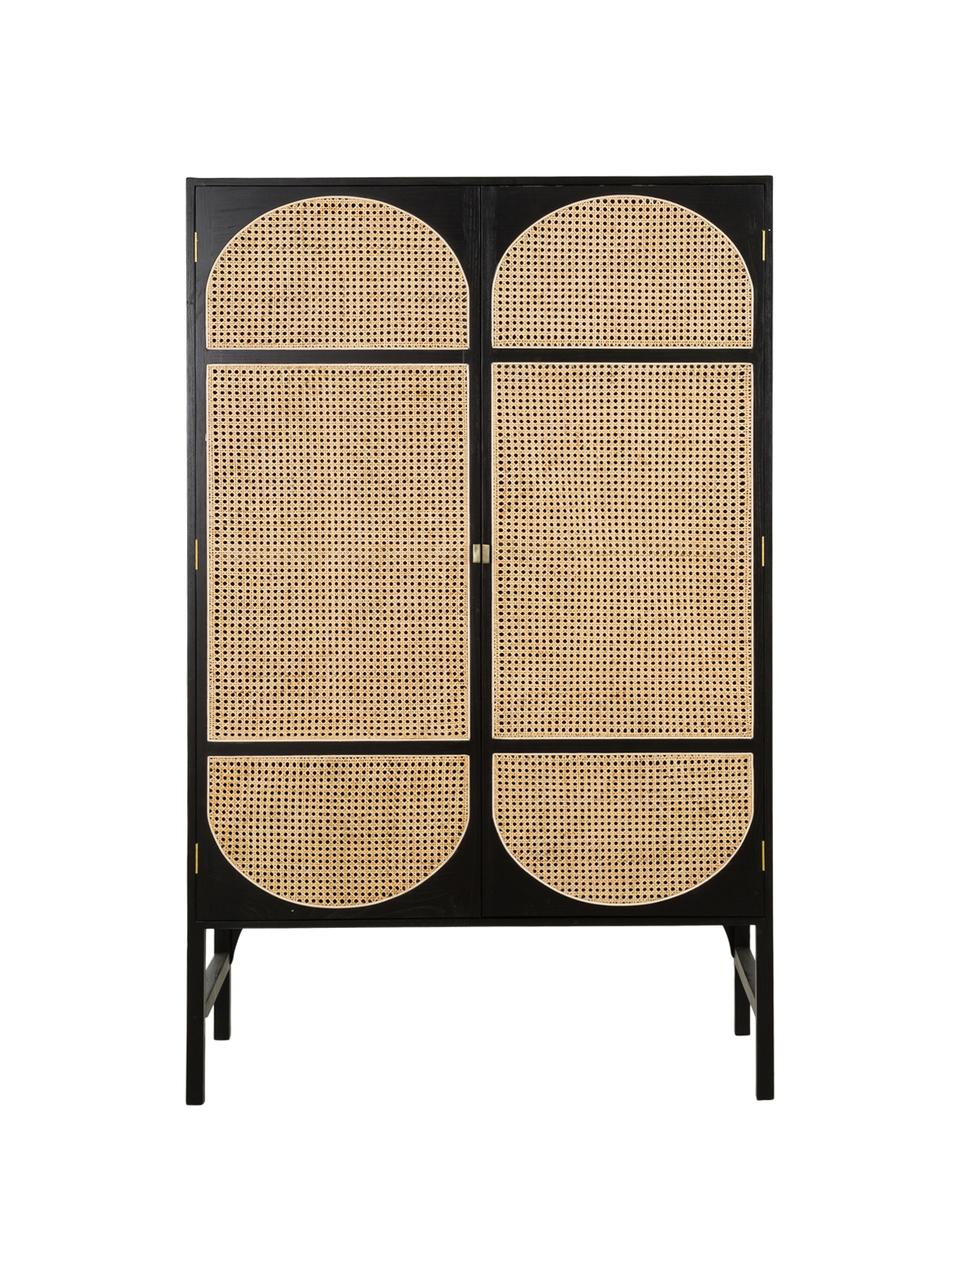 Kledingkast Retro met Weens vlechtwerk, 2 deuren, Handvatten: gecoat metaal, Donkerbruin, 125 x 200 cm